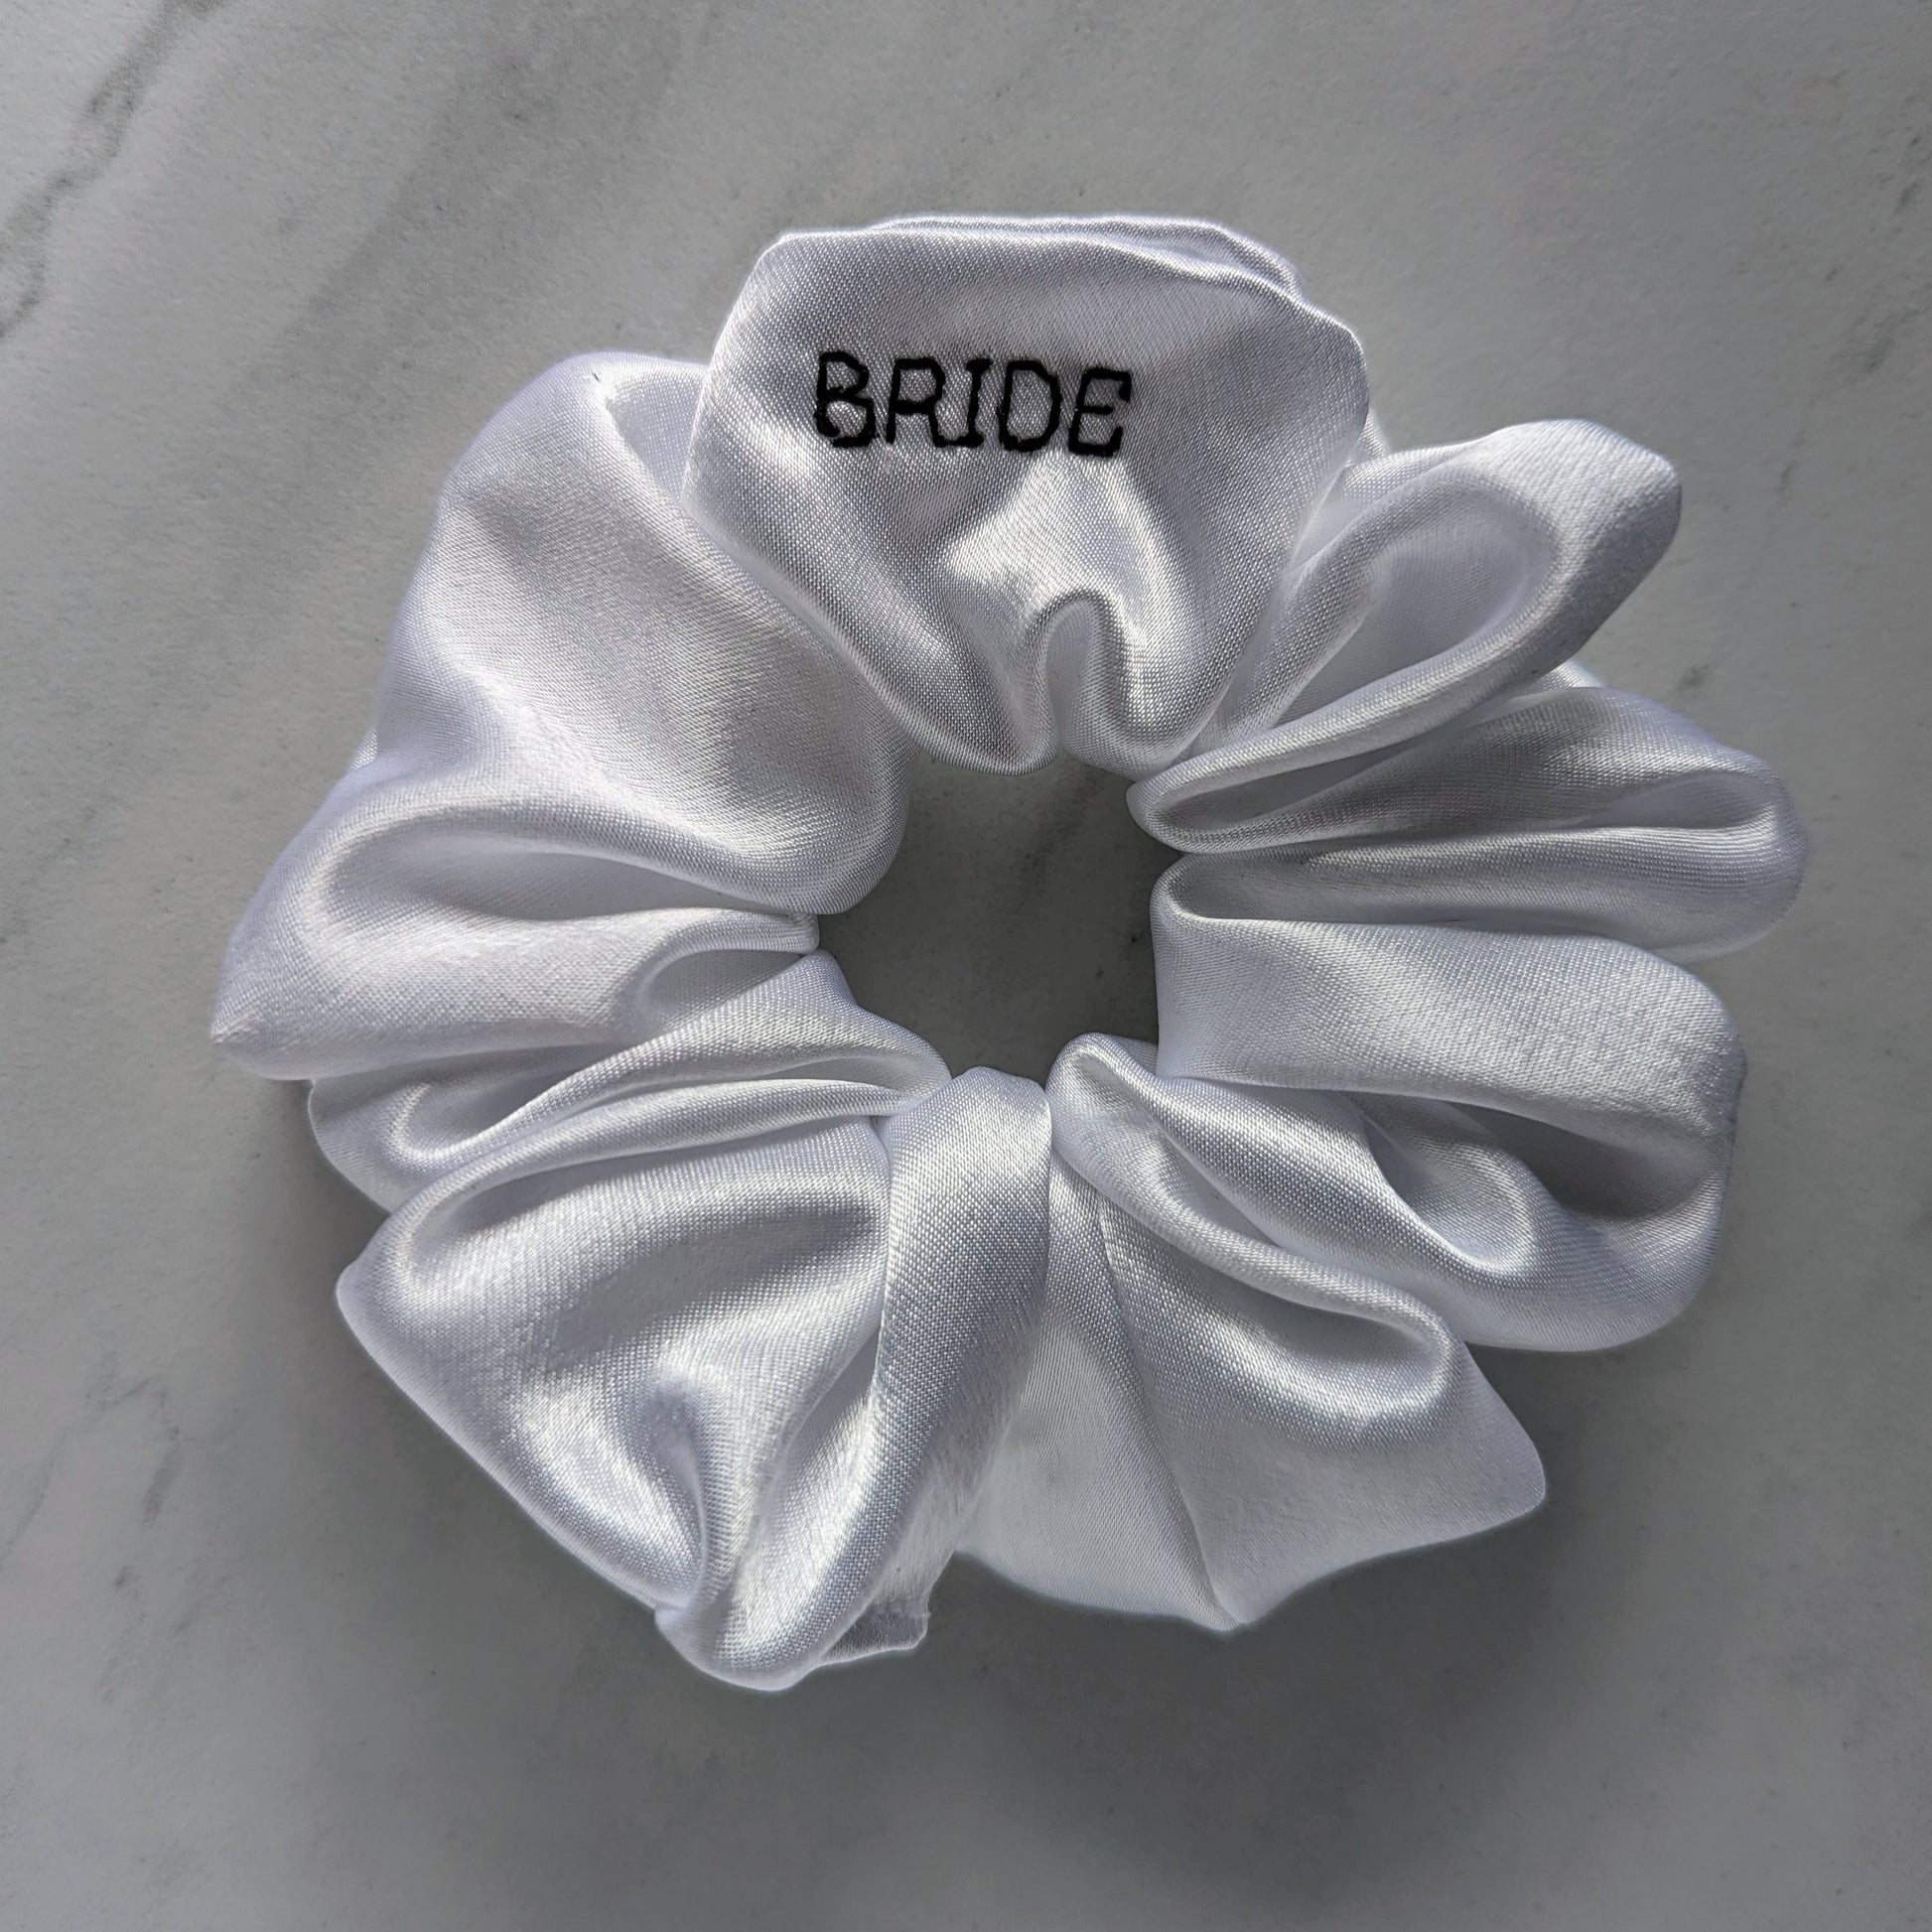 Cute Bridal Party Gift idea - Lilac Satin Tie Bonnet